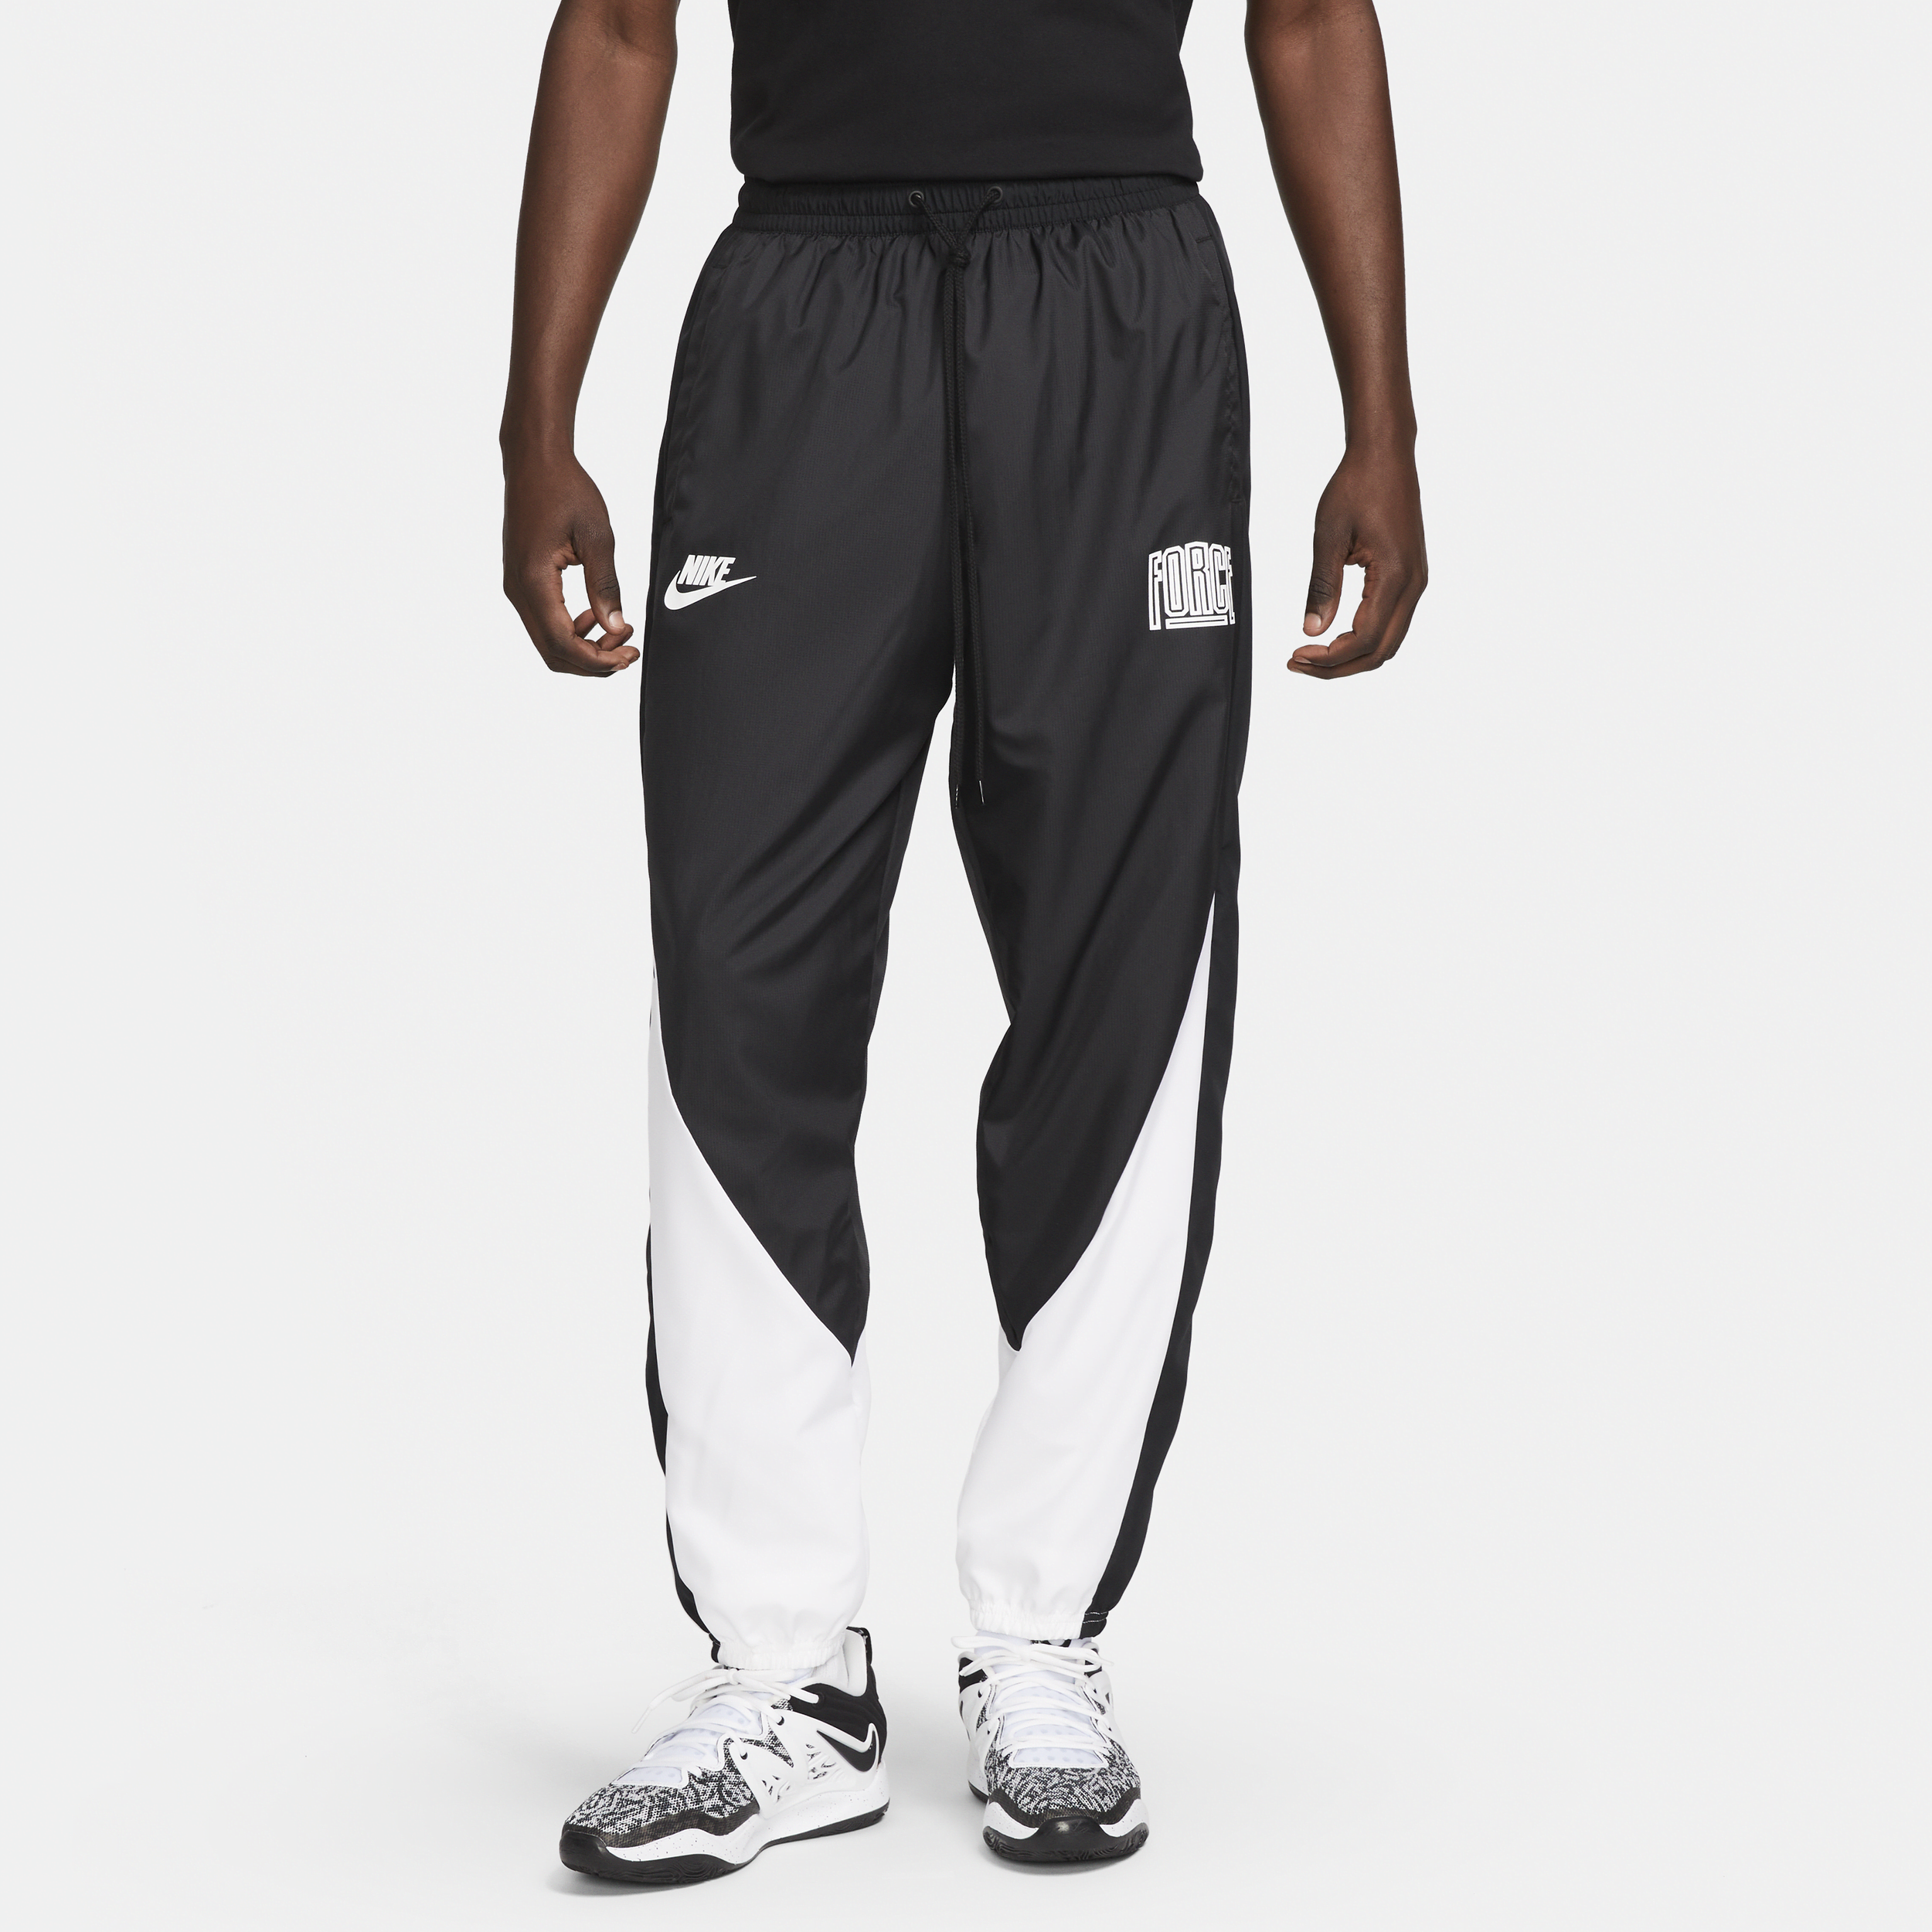 Nike Starting 5 Pantalón de baloncesto - Hombre - Negro